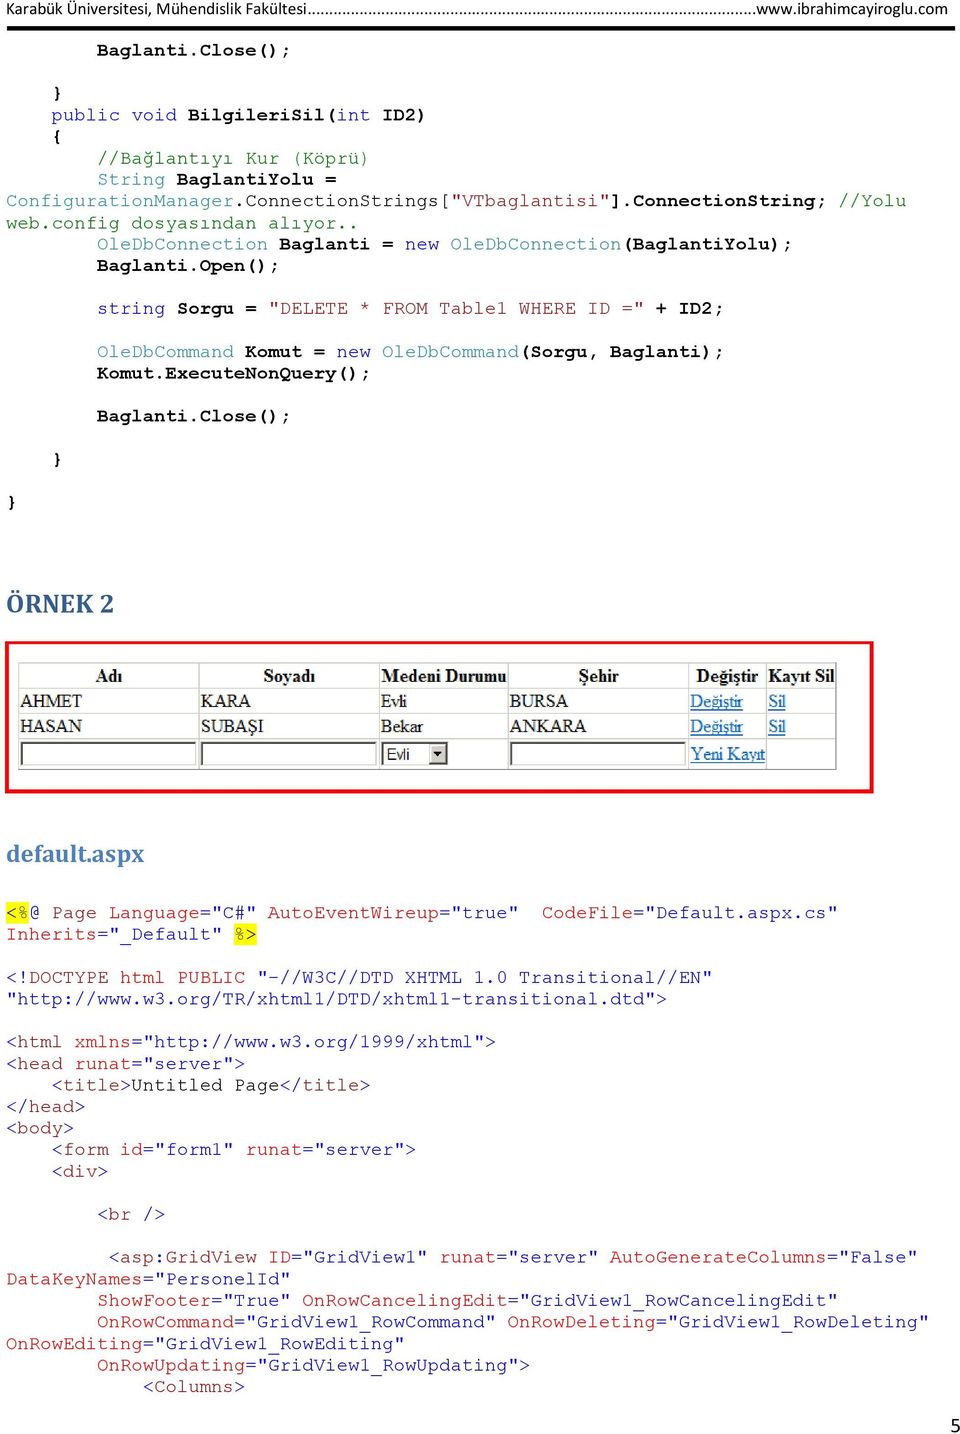 aspx <%@ Page Language="C#" AutoEventWireup="true" CodeFile="Default.aspx.cs" Inherits="_Default" %> <!DOCTYPE html PUBLIC "-//W3C//DTD XHTML 1.0 Transitional//EN" "http://www.w3.